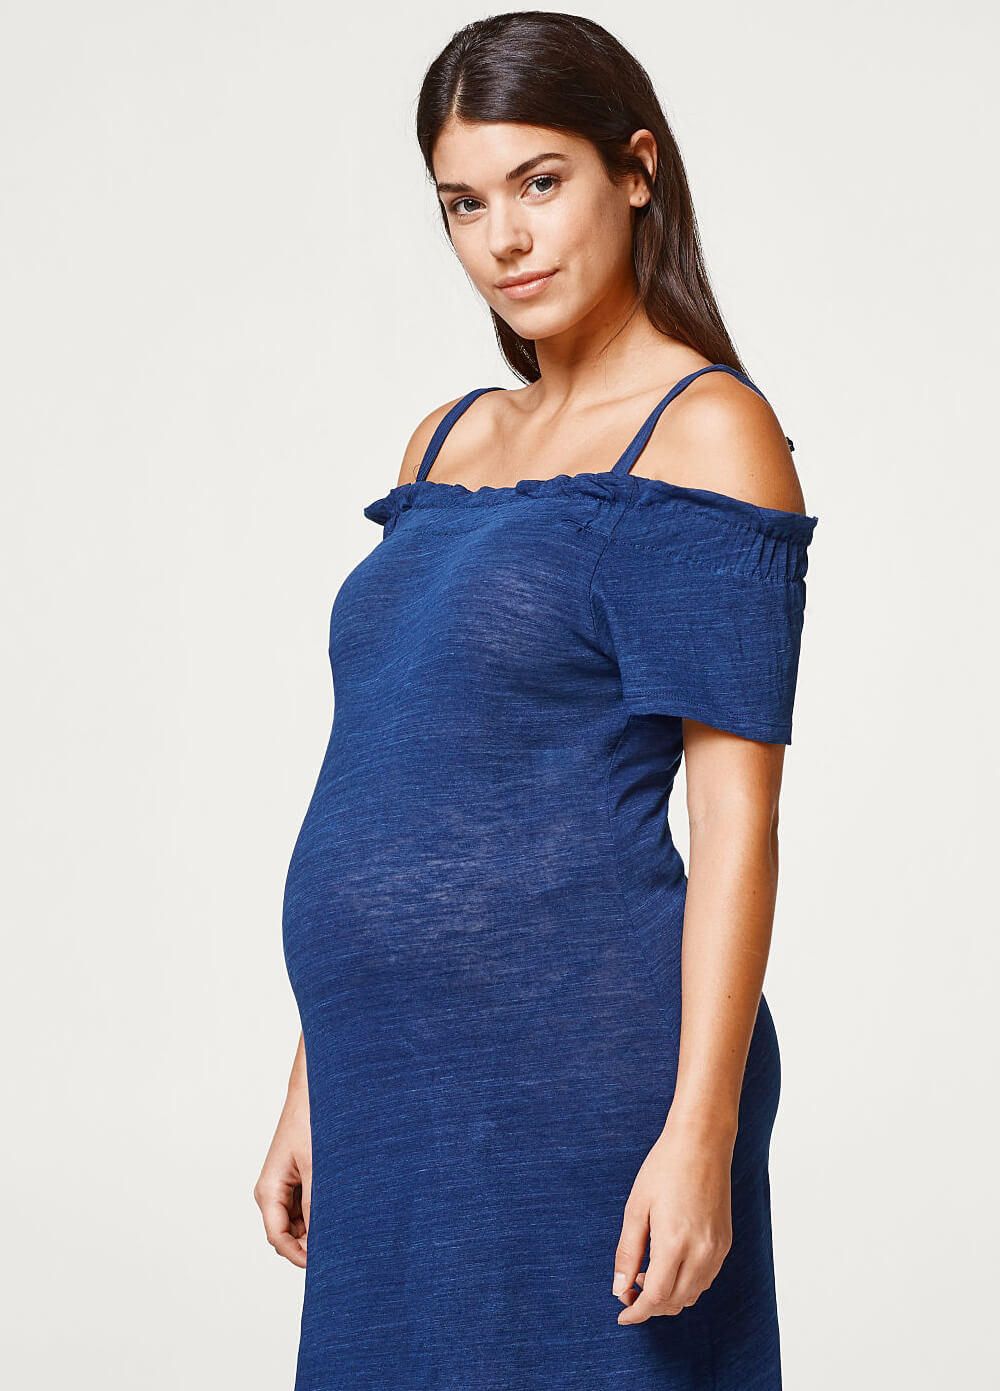 Azure Blue Off Shoulder Maternity Dress by Esprit